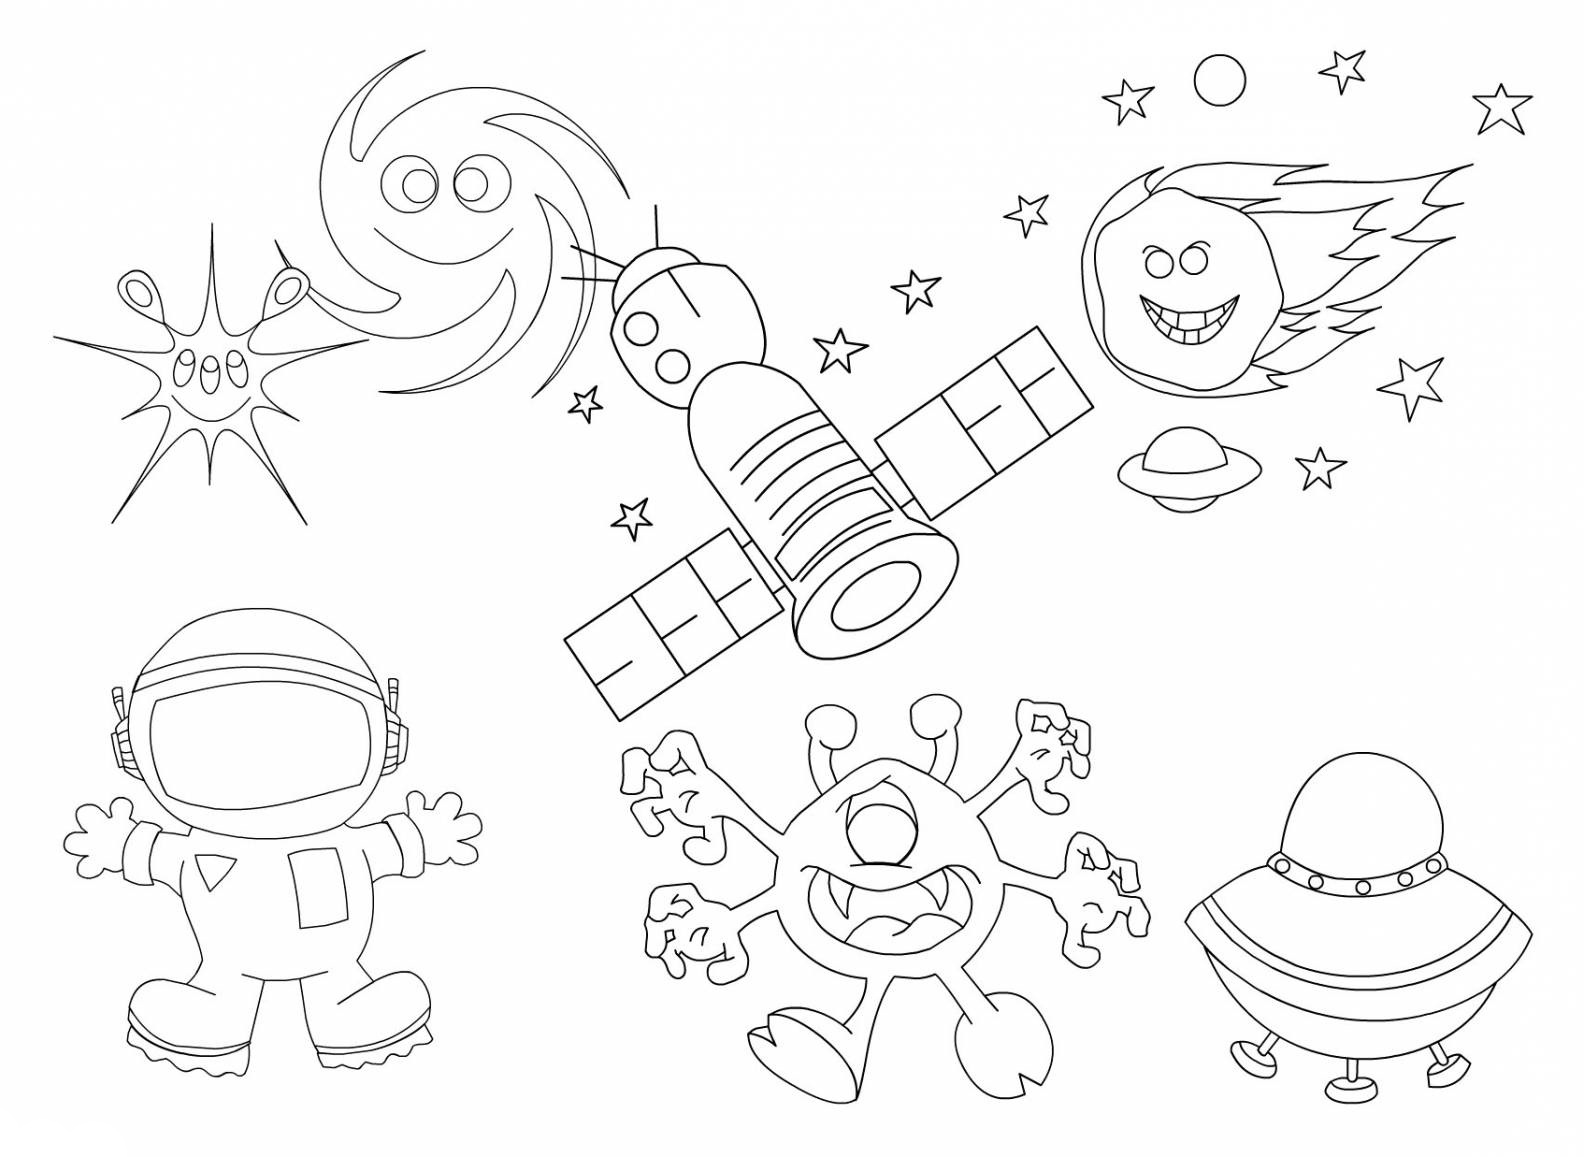 Раскраски на тему космос. Раскраски для взрослых.            Раскраски на тему планеты, ракеты, космос. Раскраски со звездами, кометами, космонавтами.   